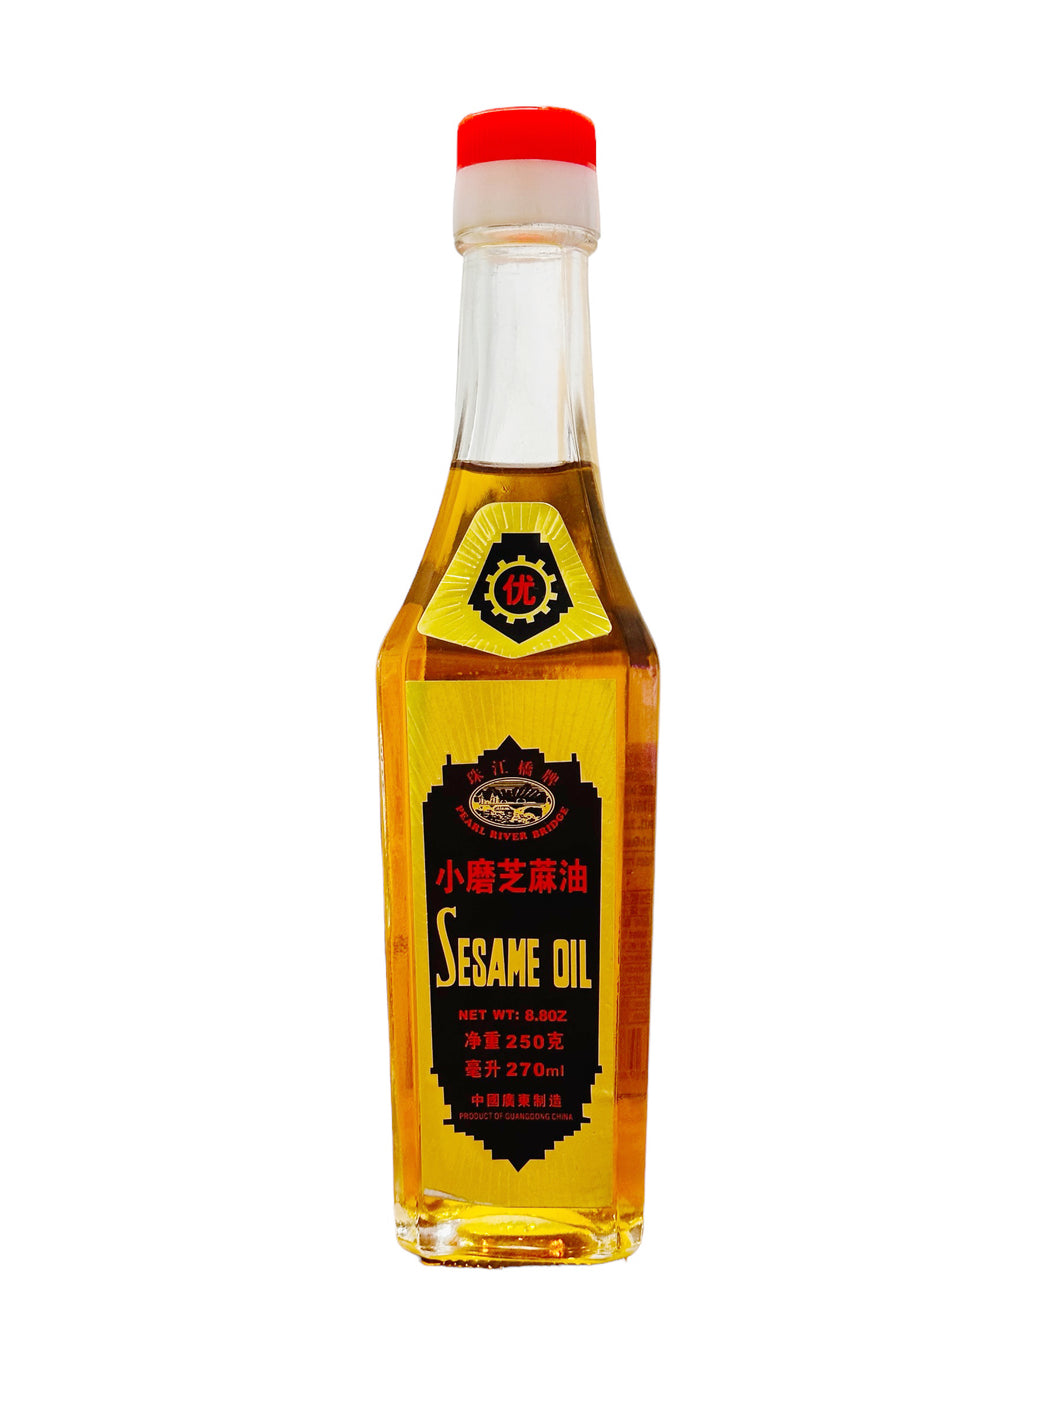 A Sesame Oil 270ml 麻油